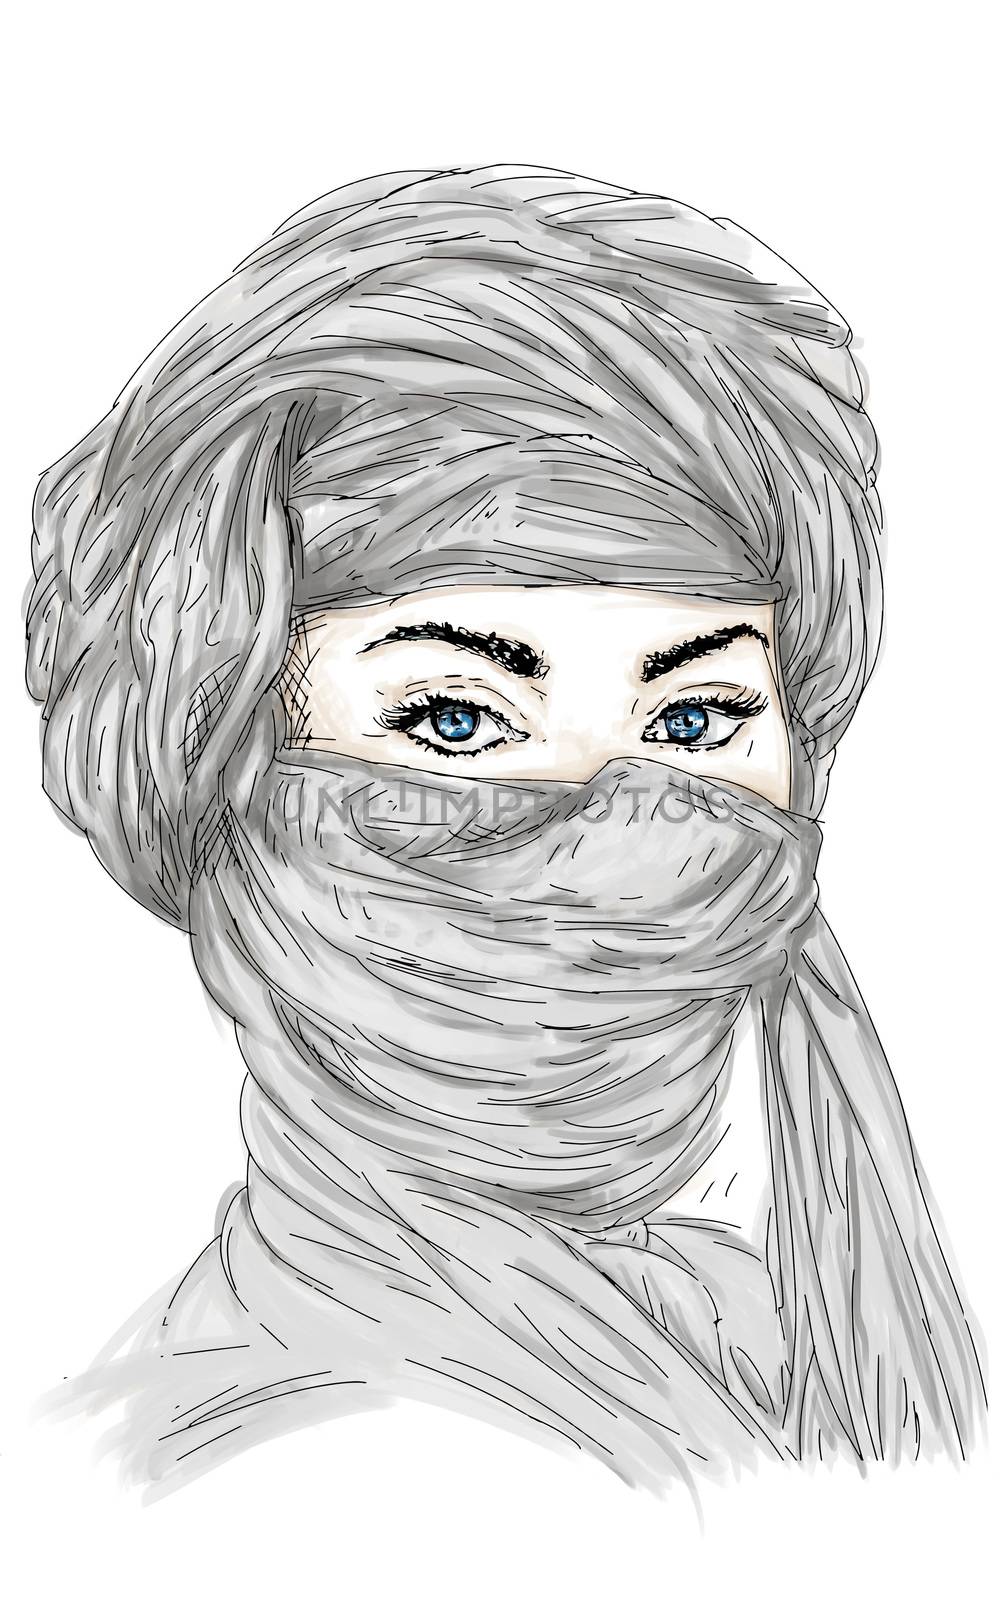 Woman with muslim headdress, Arab with blue eyes